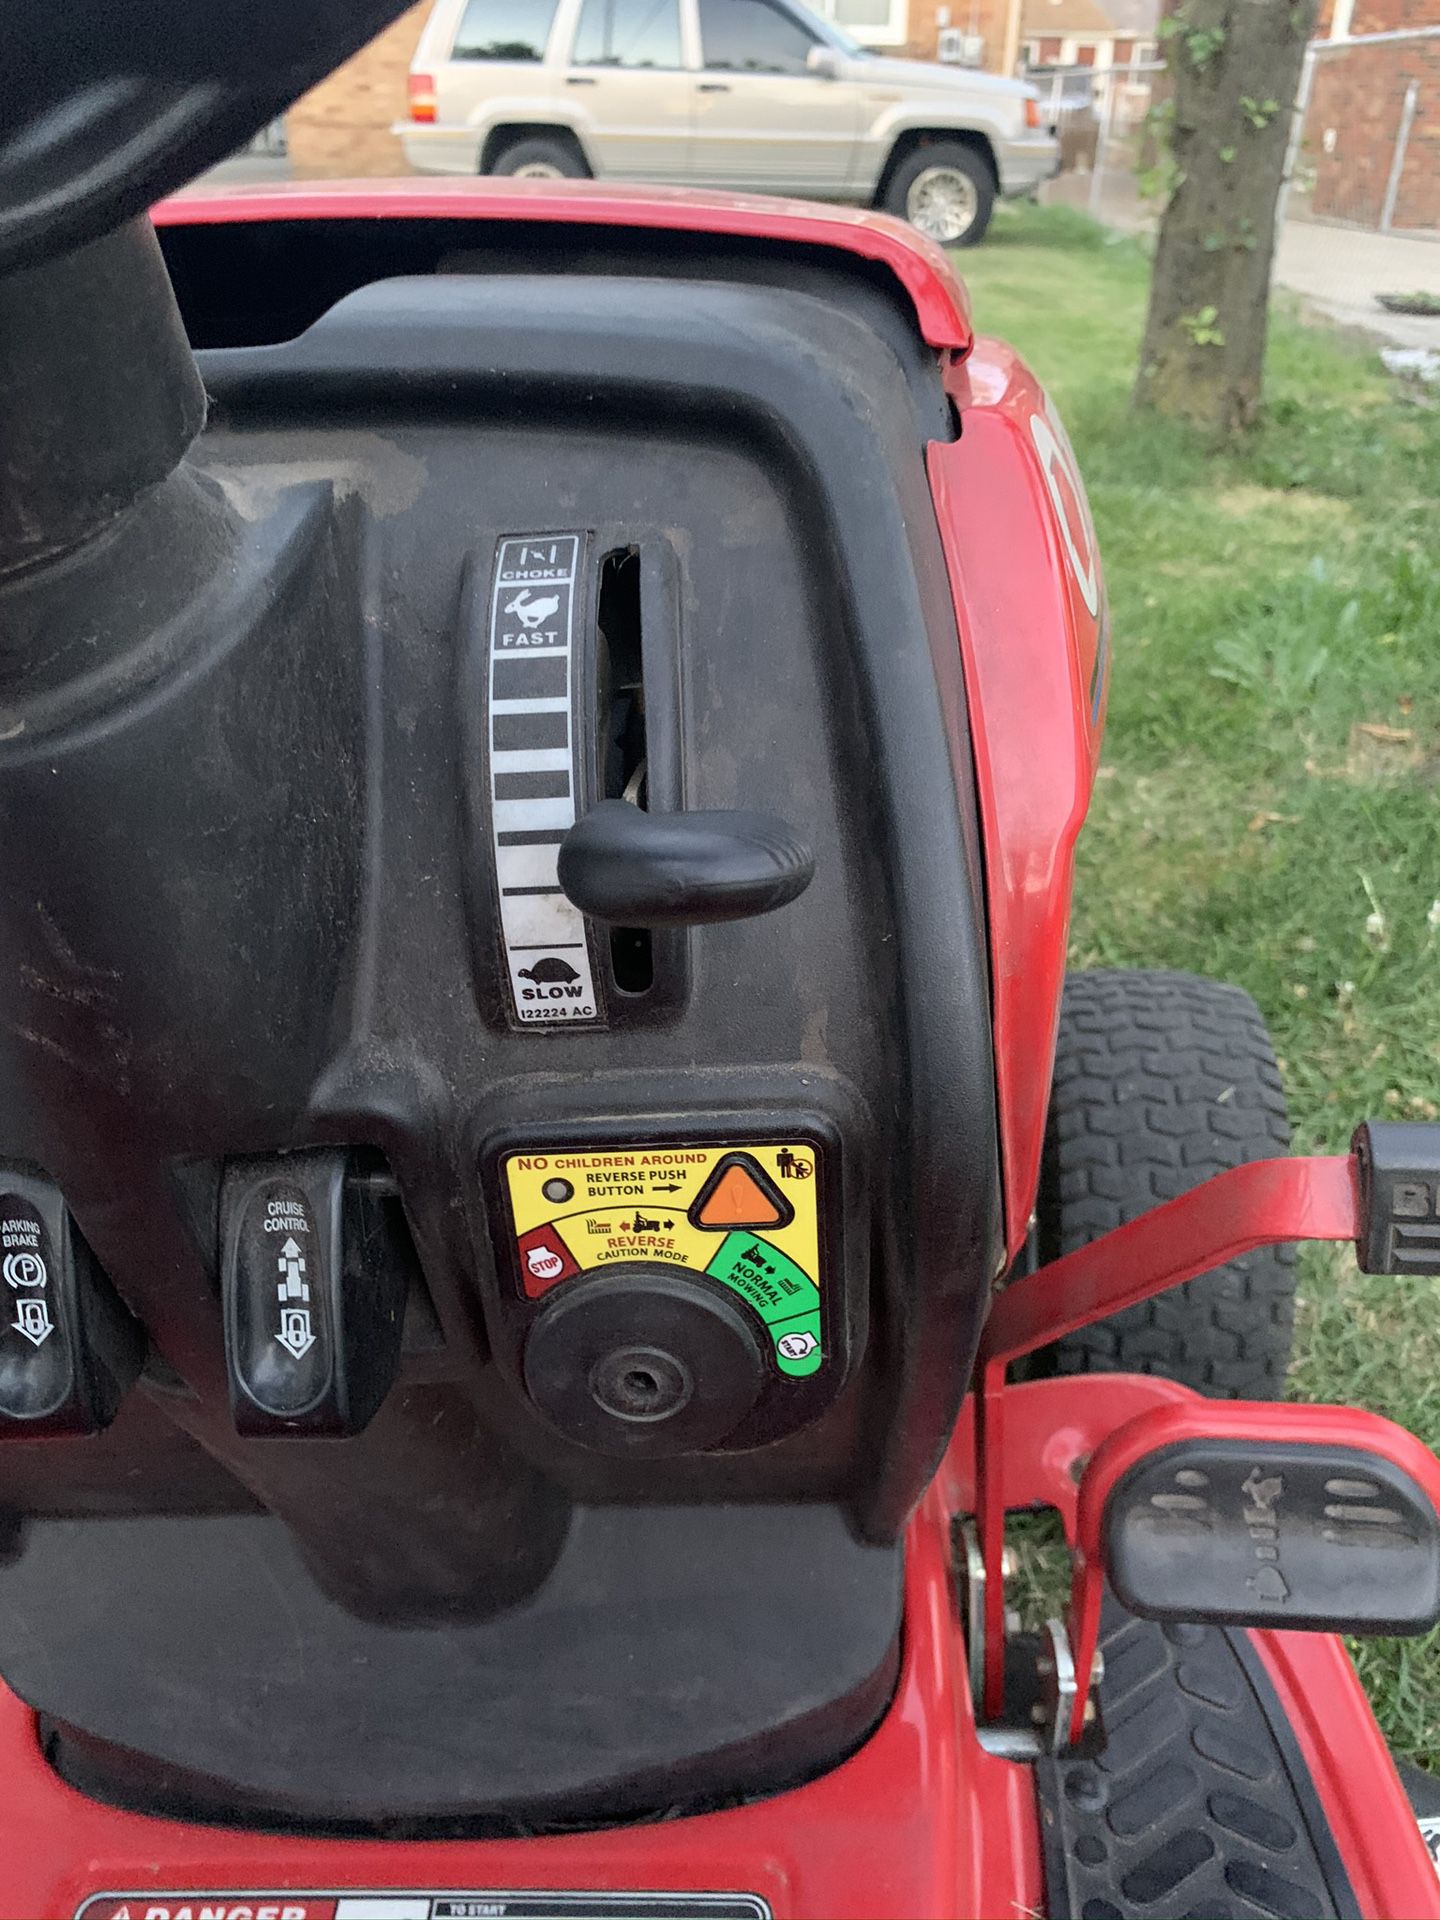 Troy Bilt Riding Lawnmower For Sale In Dearborn Mi Offerup